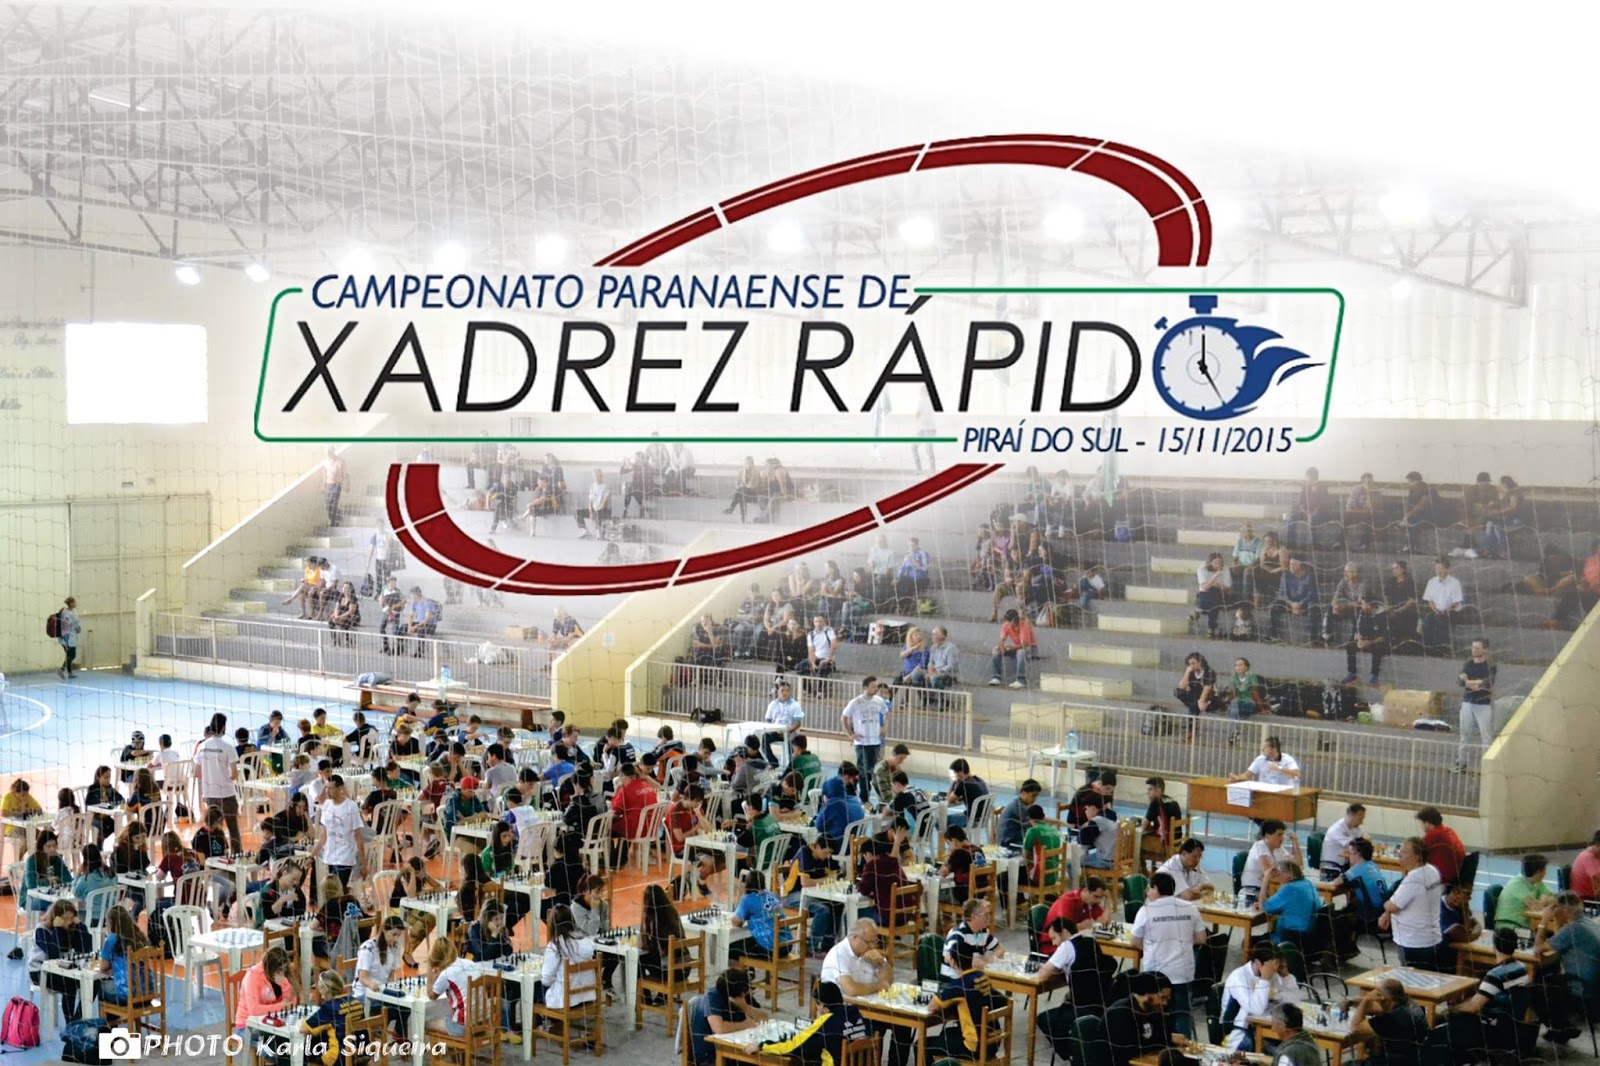 CAMPEONATO PARANAENSE DE XADREZ, ECOS DE UM GRANDE EVENTO. - FEXPAR -  Federação de Xadrez do Paraná